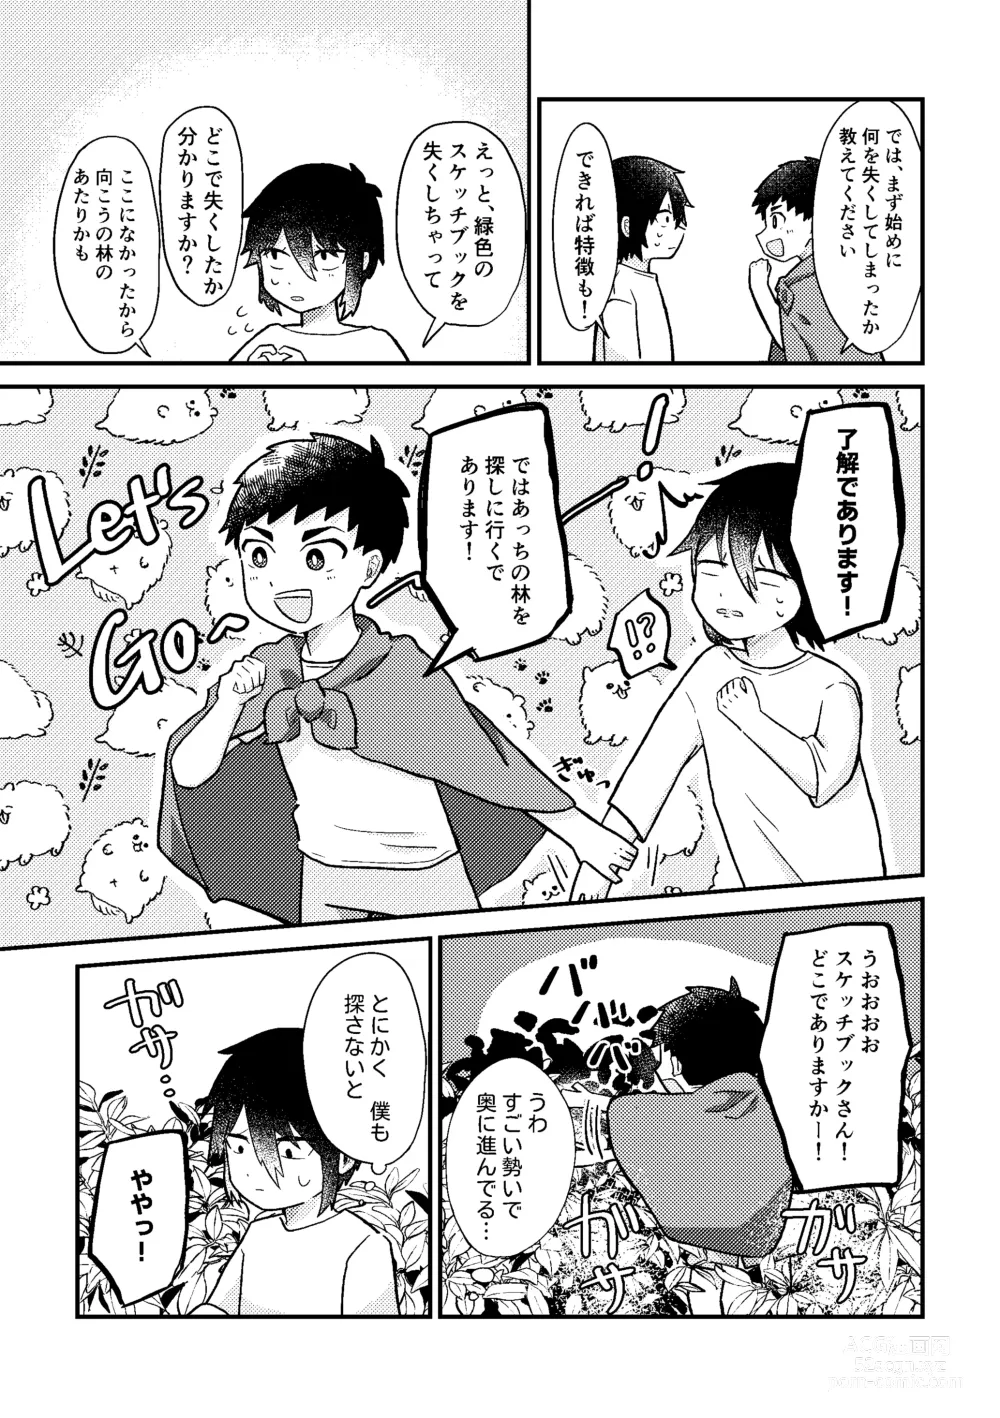 Page 10 of doujinshi Saigo no Natsuyasumi